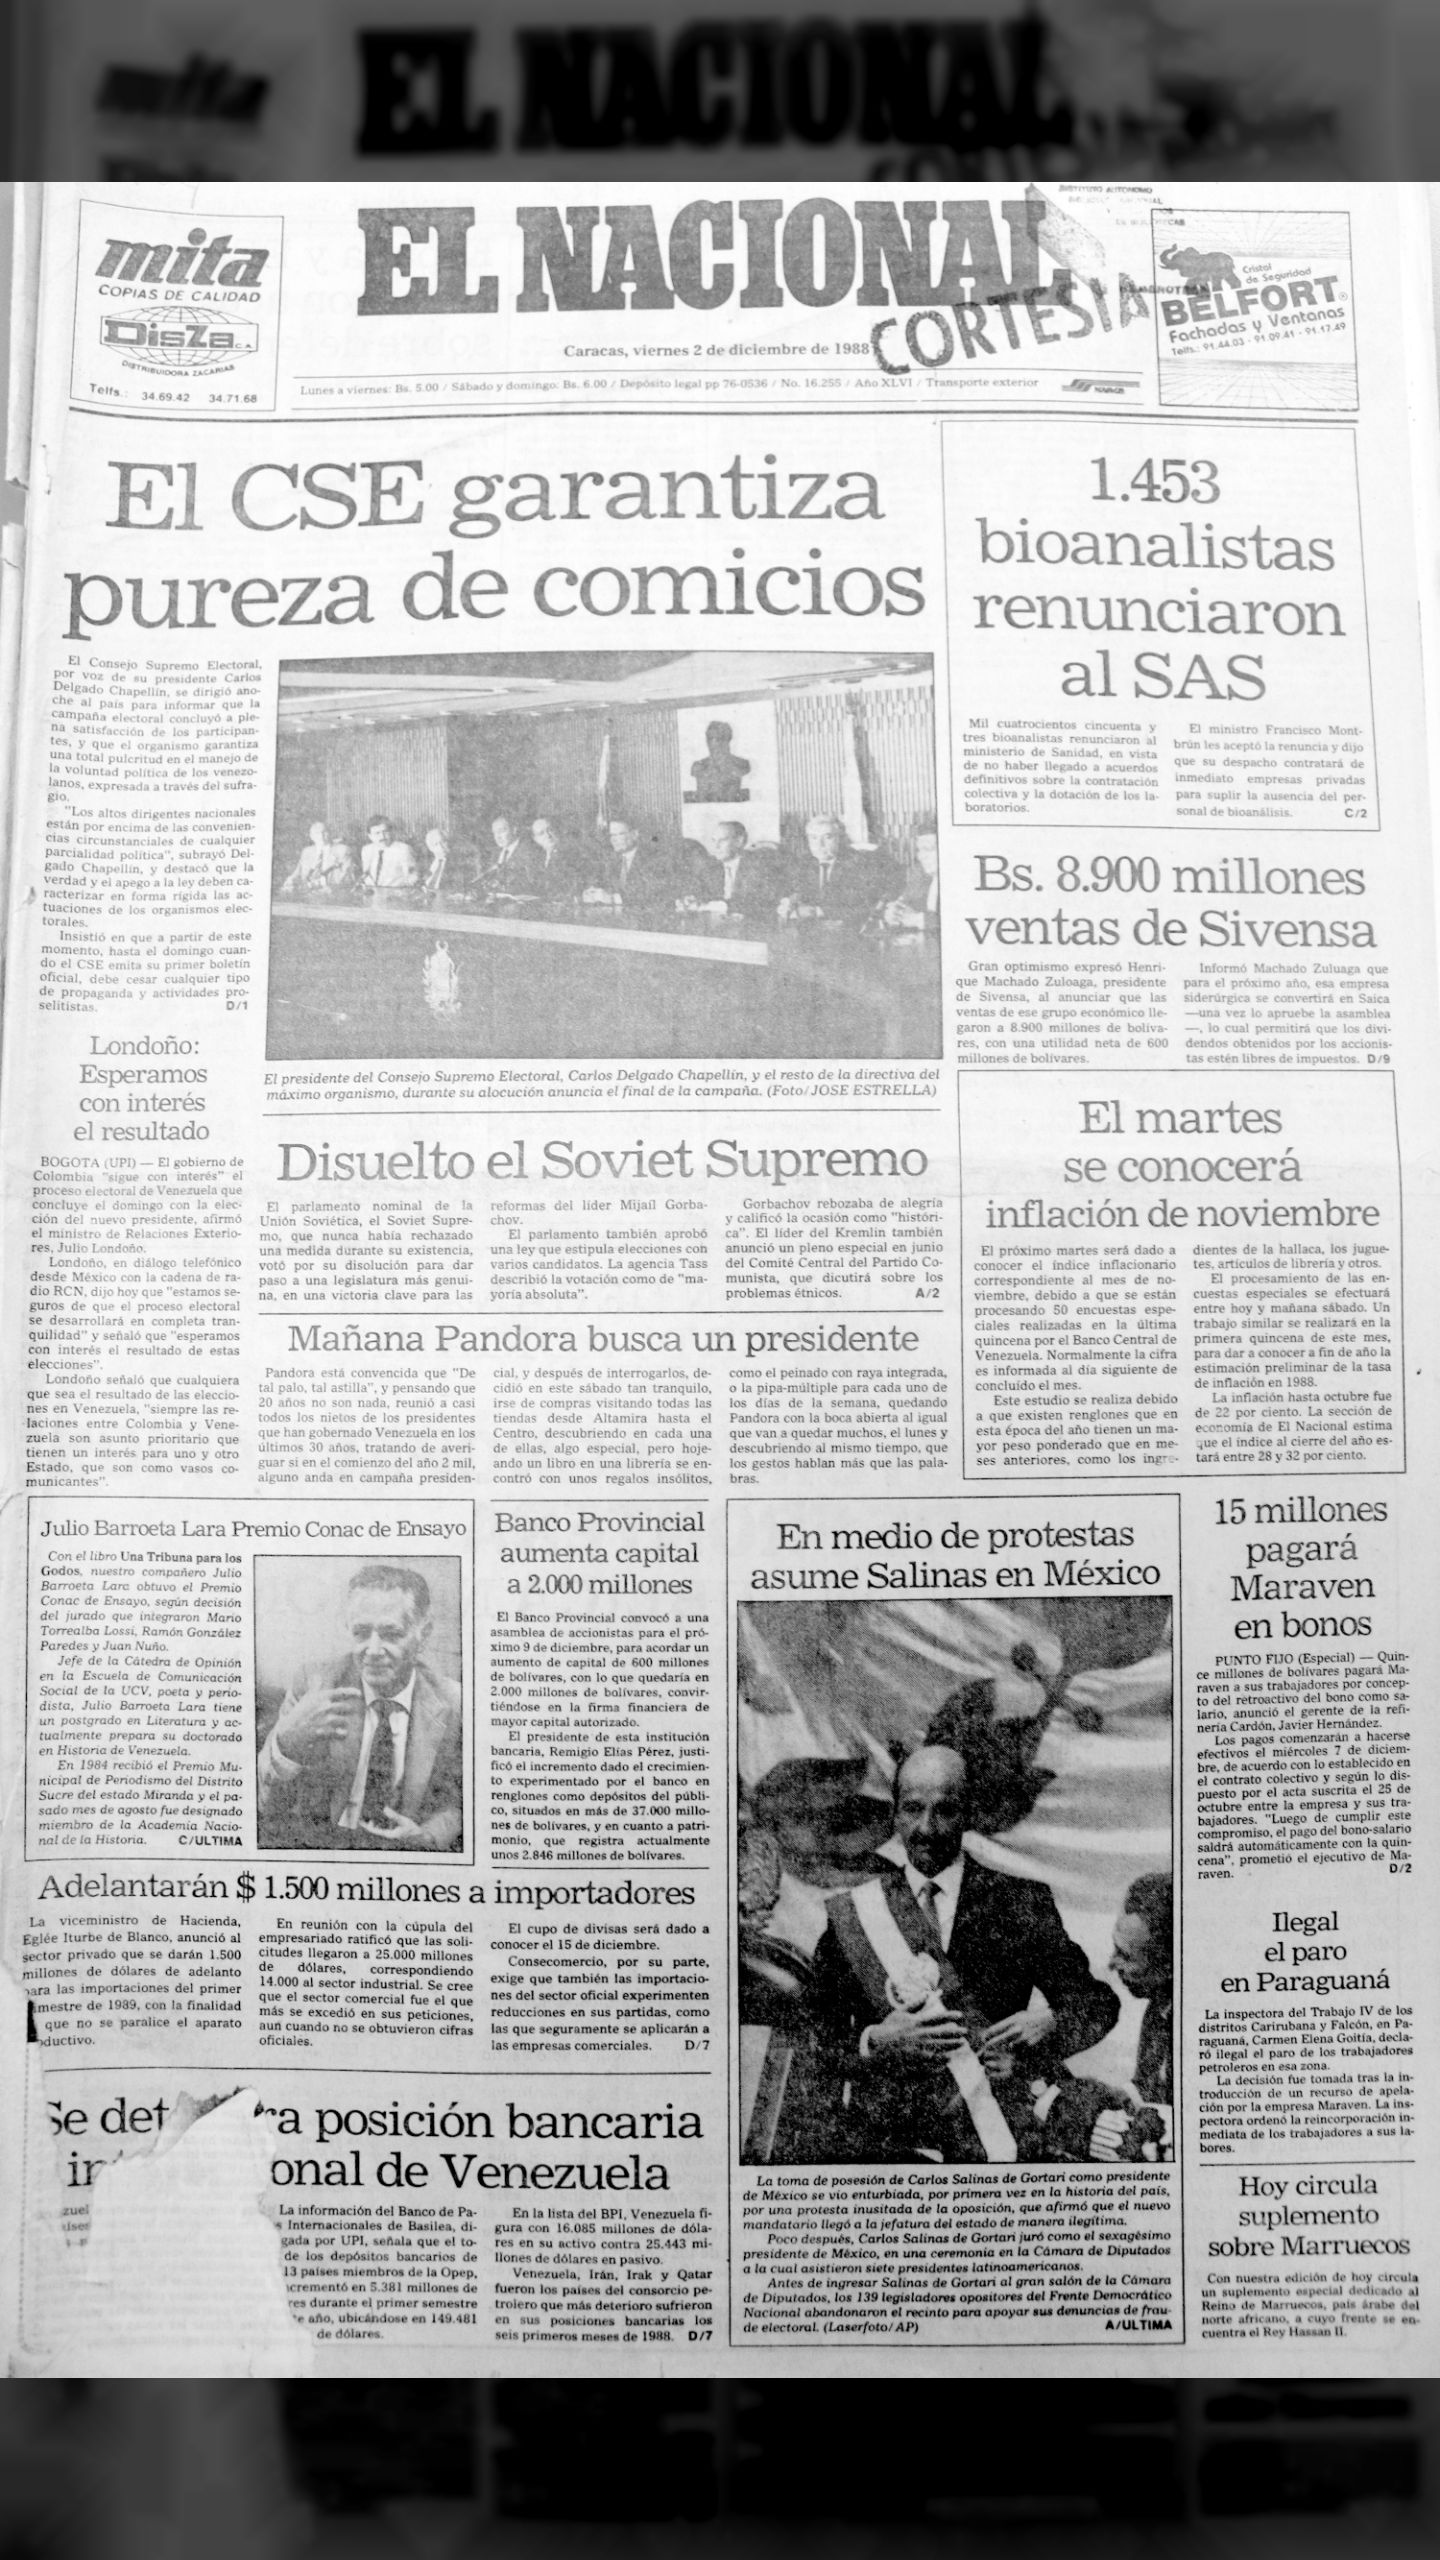 El CSE garantiza pureza de comicios (El Nacional, viernes 02 de diciembre de 1988)